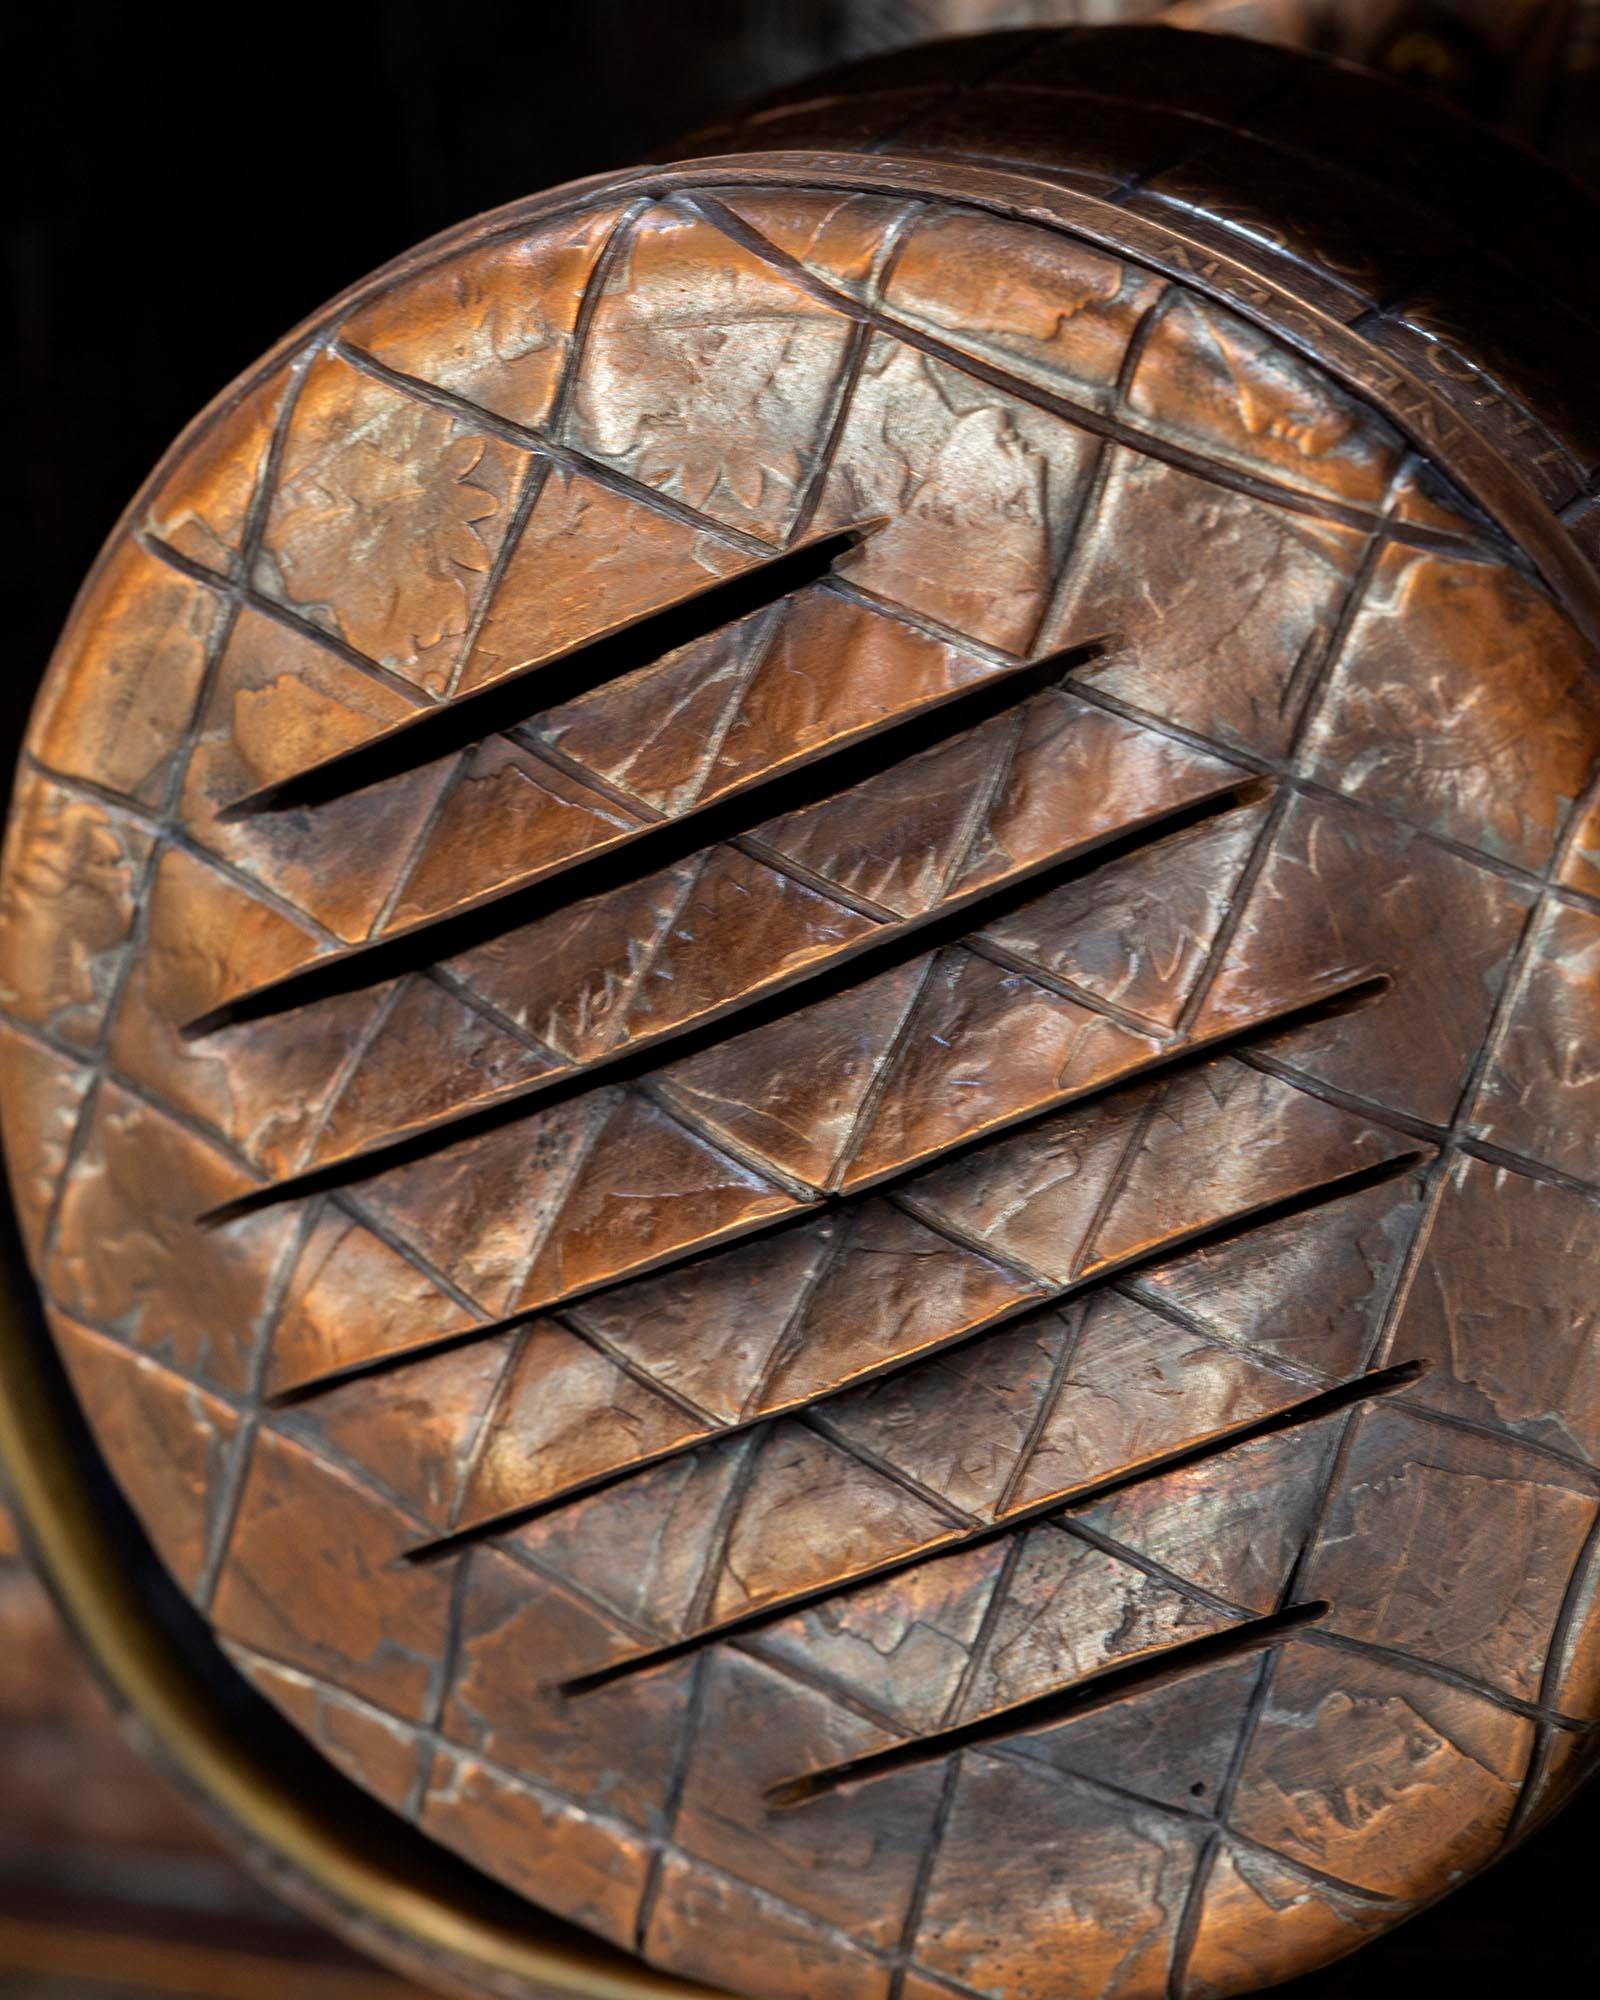 La série des artisans : Tronçonneuse

Pièces de monnaie américaines en cuivre massif soudées et fabriquées, accents en laiton, construction en métal creux.

La série Craftsmen contient des outils de travail recréés dans des pièces de monnaie en